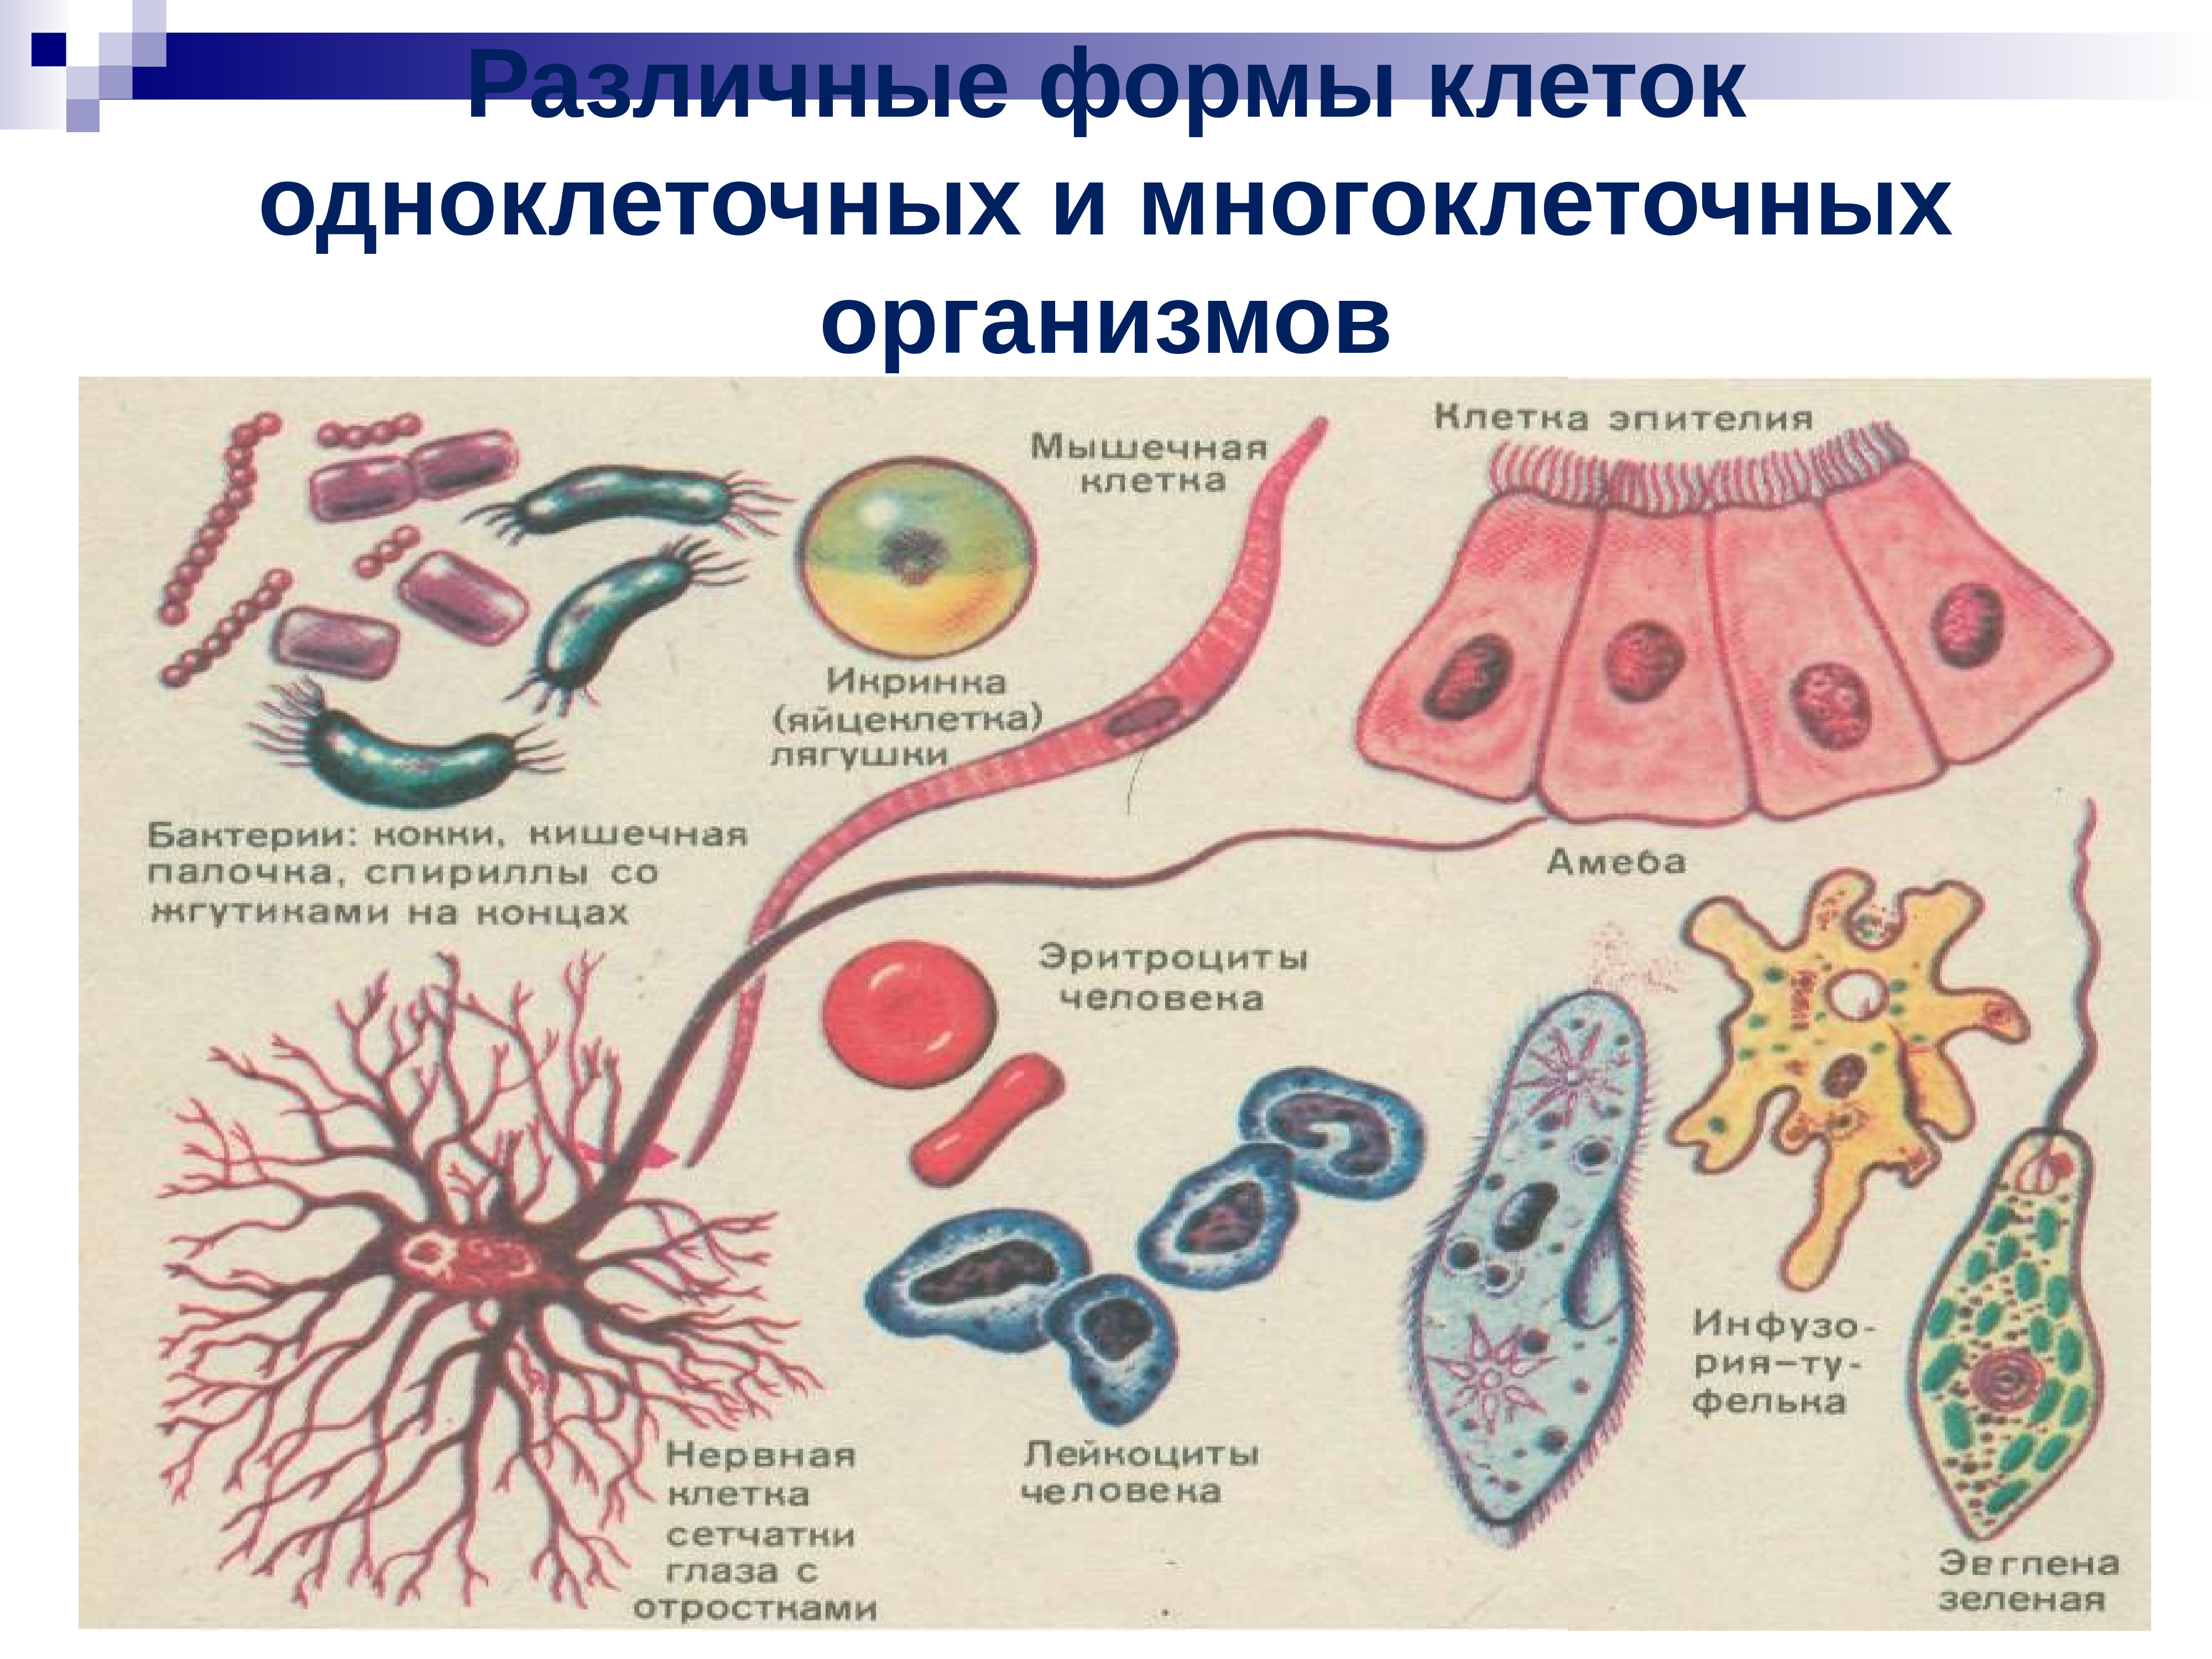 Формы клеток одноклеточных и многоклеточных организмов